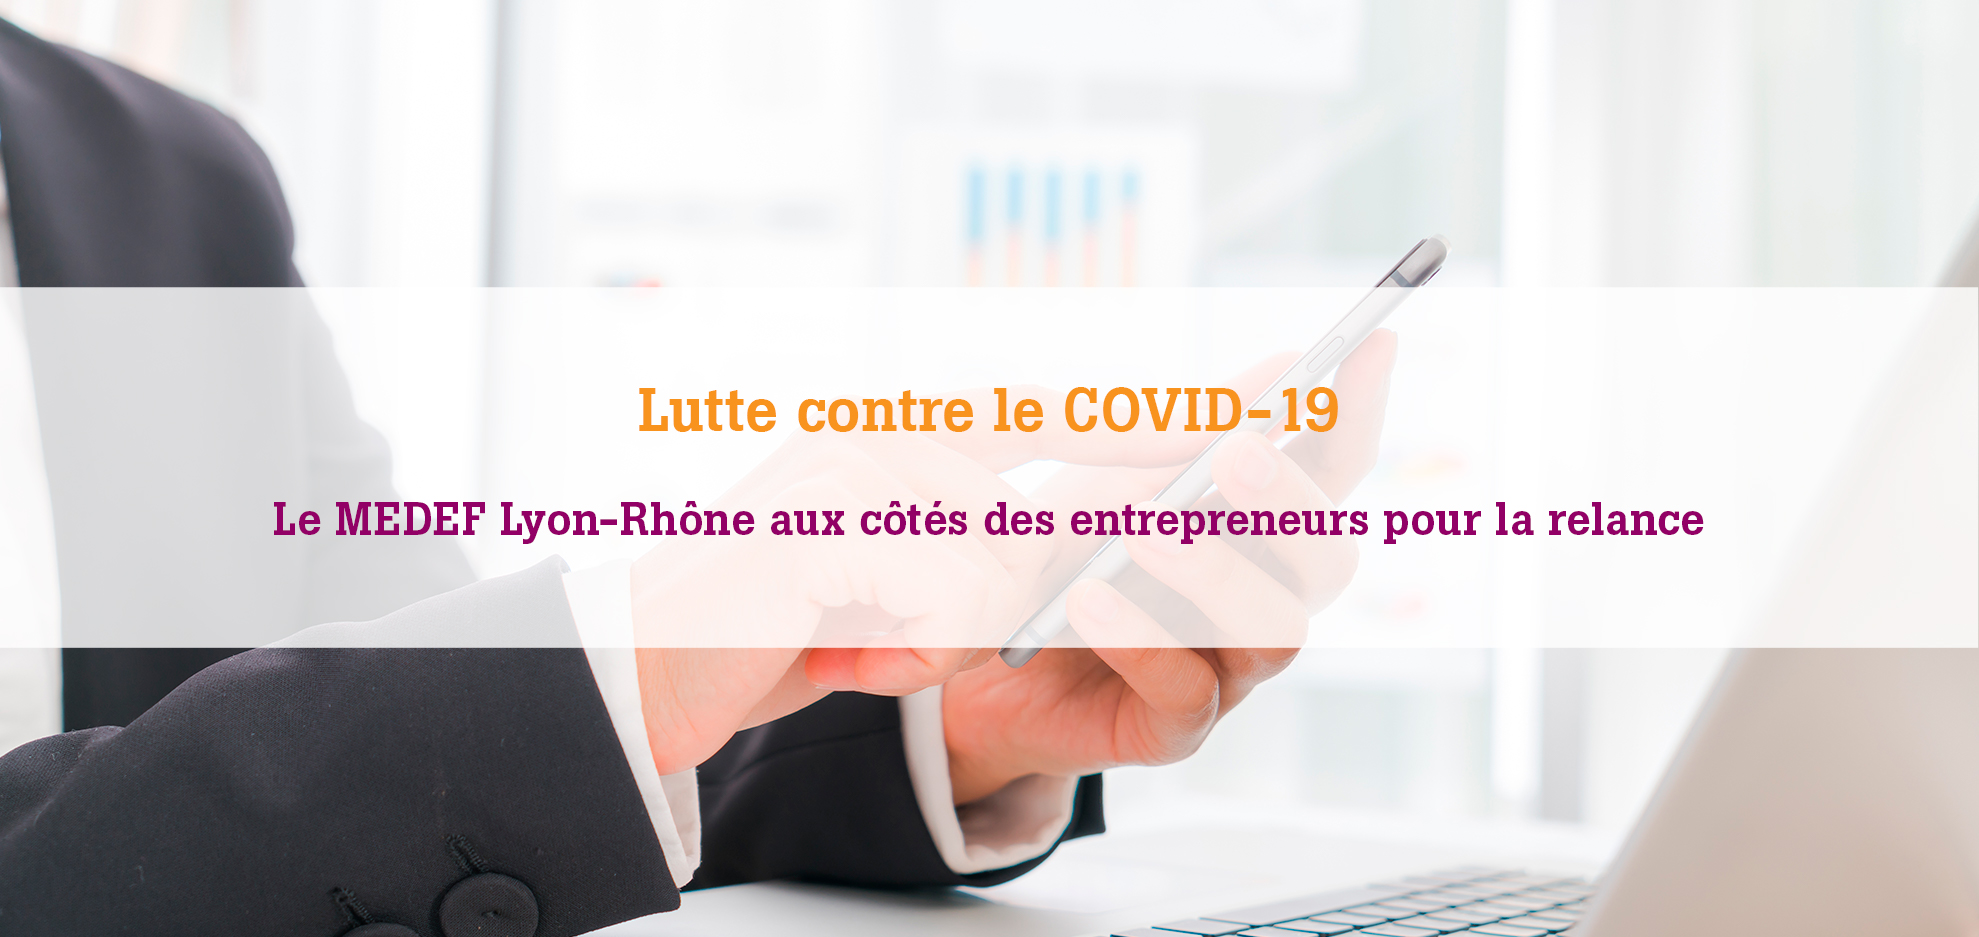 Le MEDEF Lyon-Rhône s'engage aux côtés des entreprises pour faire face à la crise COVID-19